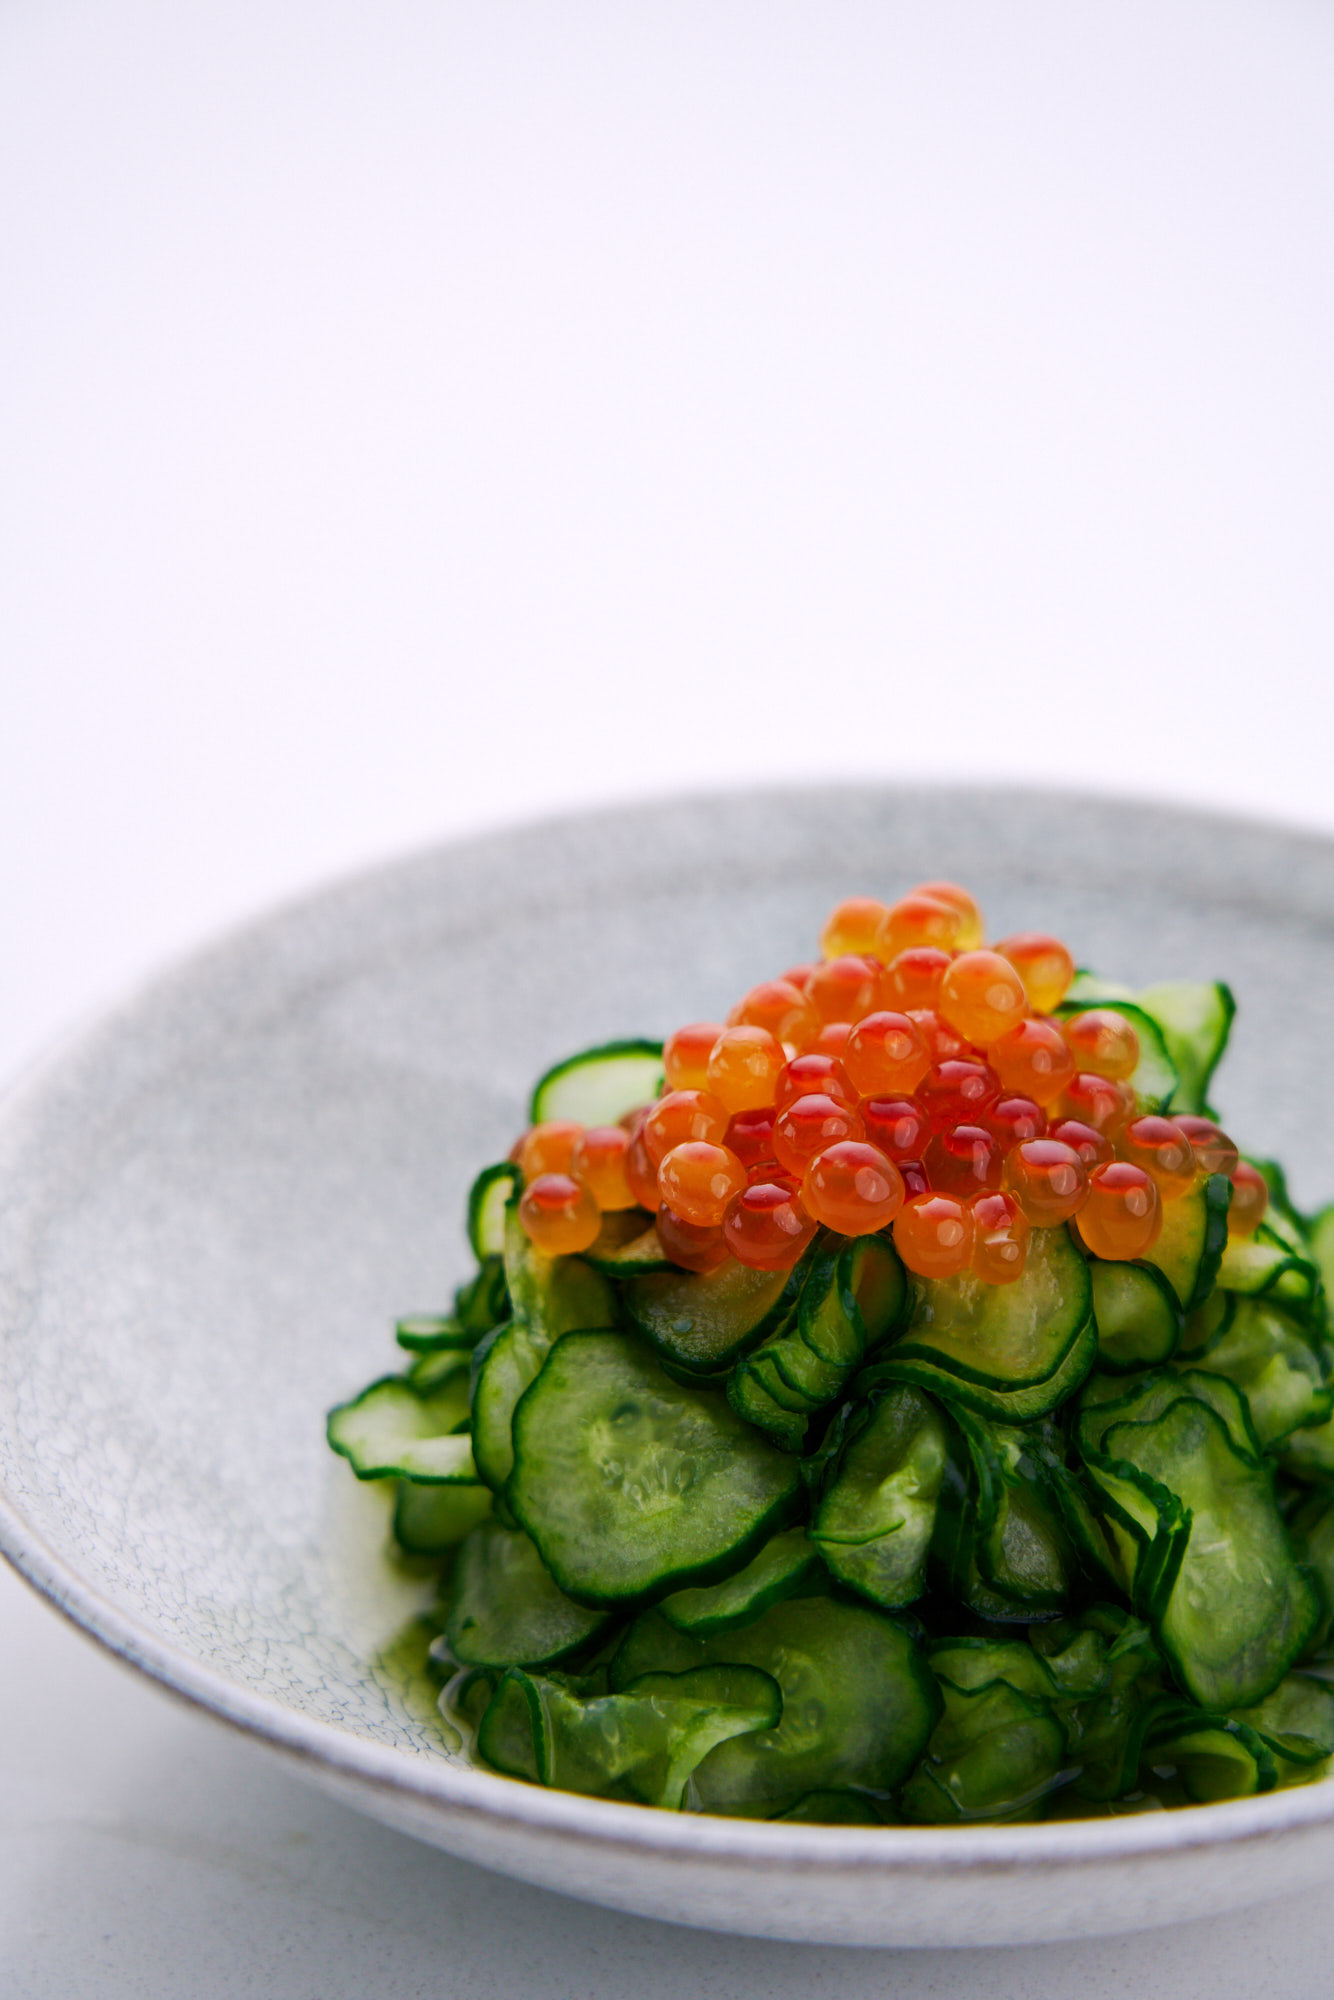 Sushi Vinegar Seasoning on Cucumber Sunomono